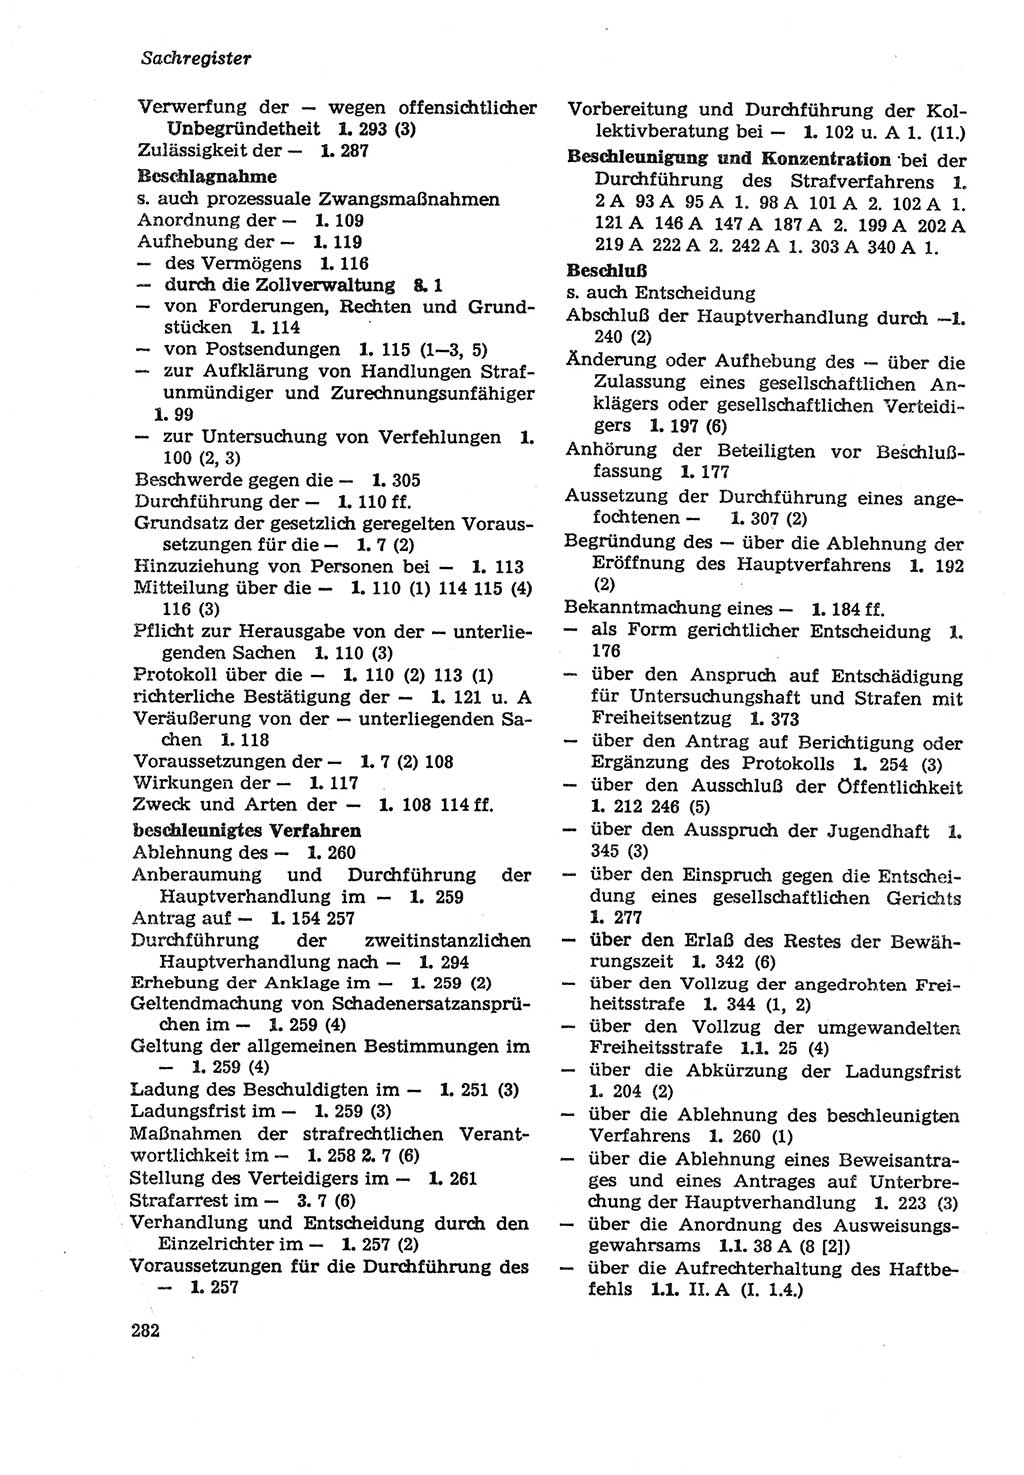 Strafprozeßordnung (StPO) der Deutschen Demokratischen Republik (DDR) sowie angrenzende Gesetze und Bestimmungen 1979, Seite 282 (StPO DDR Ges. Best. 1979, S. 282)